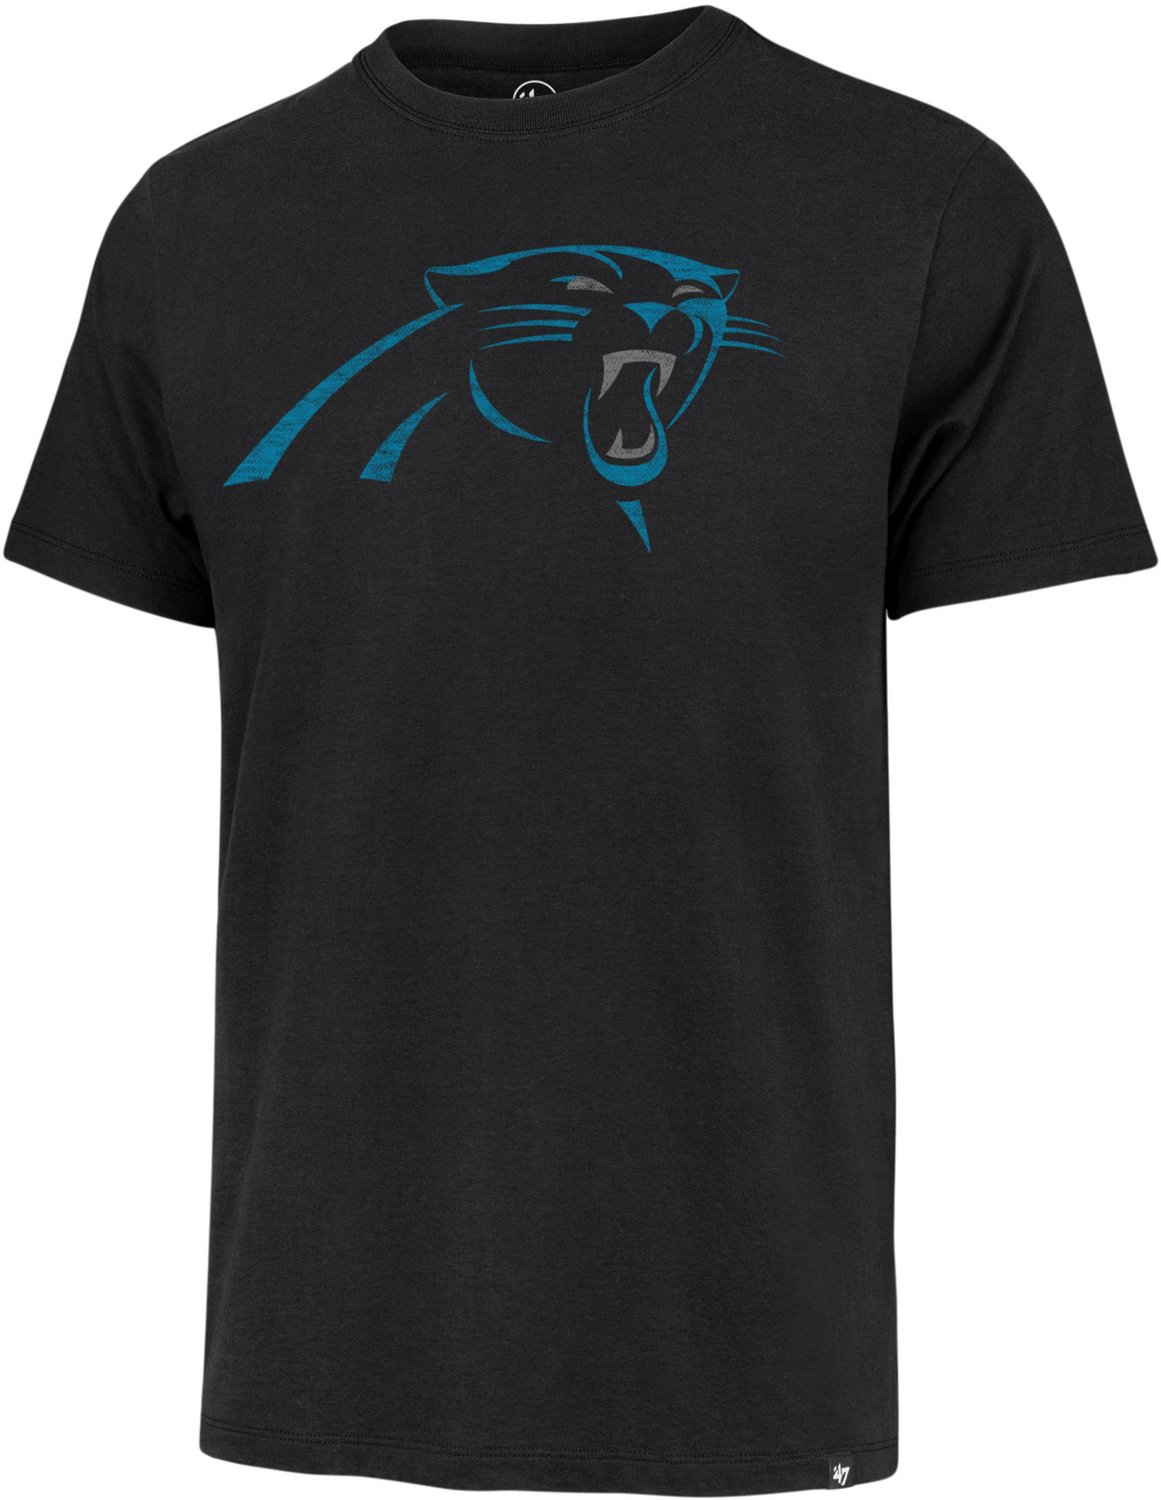 Carolina Panthers Jerseys, Shirts, & Apparel